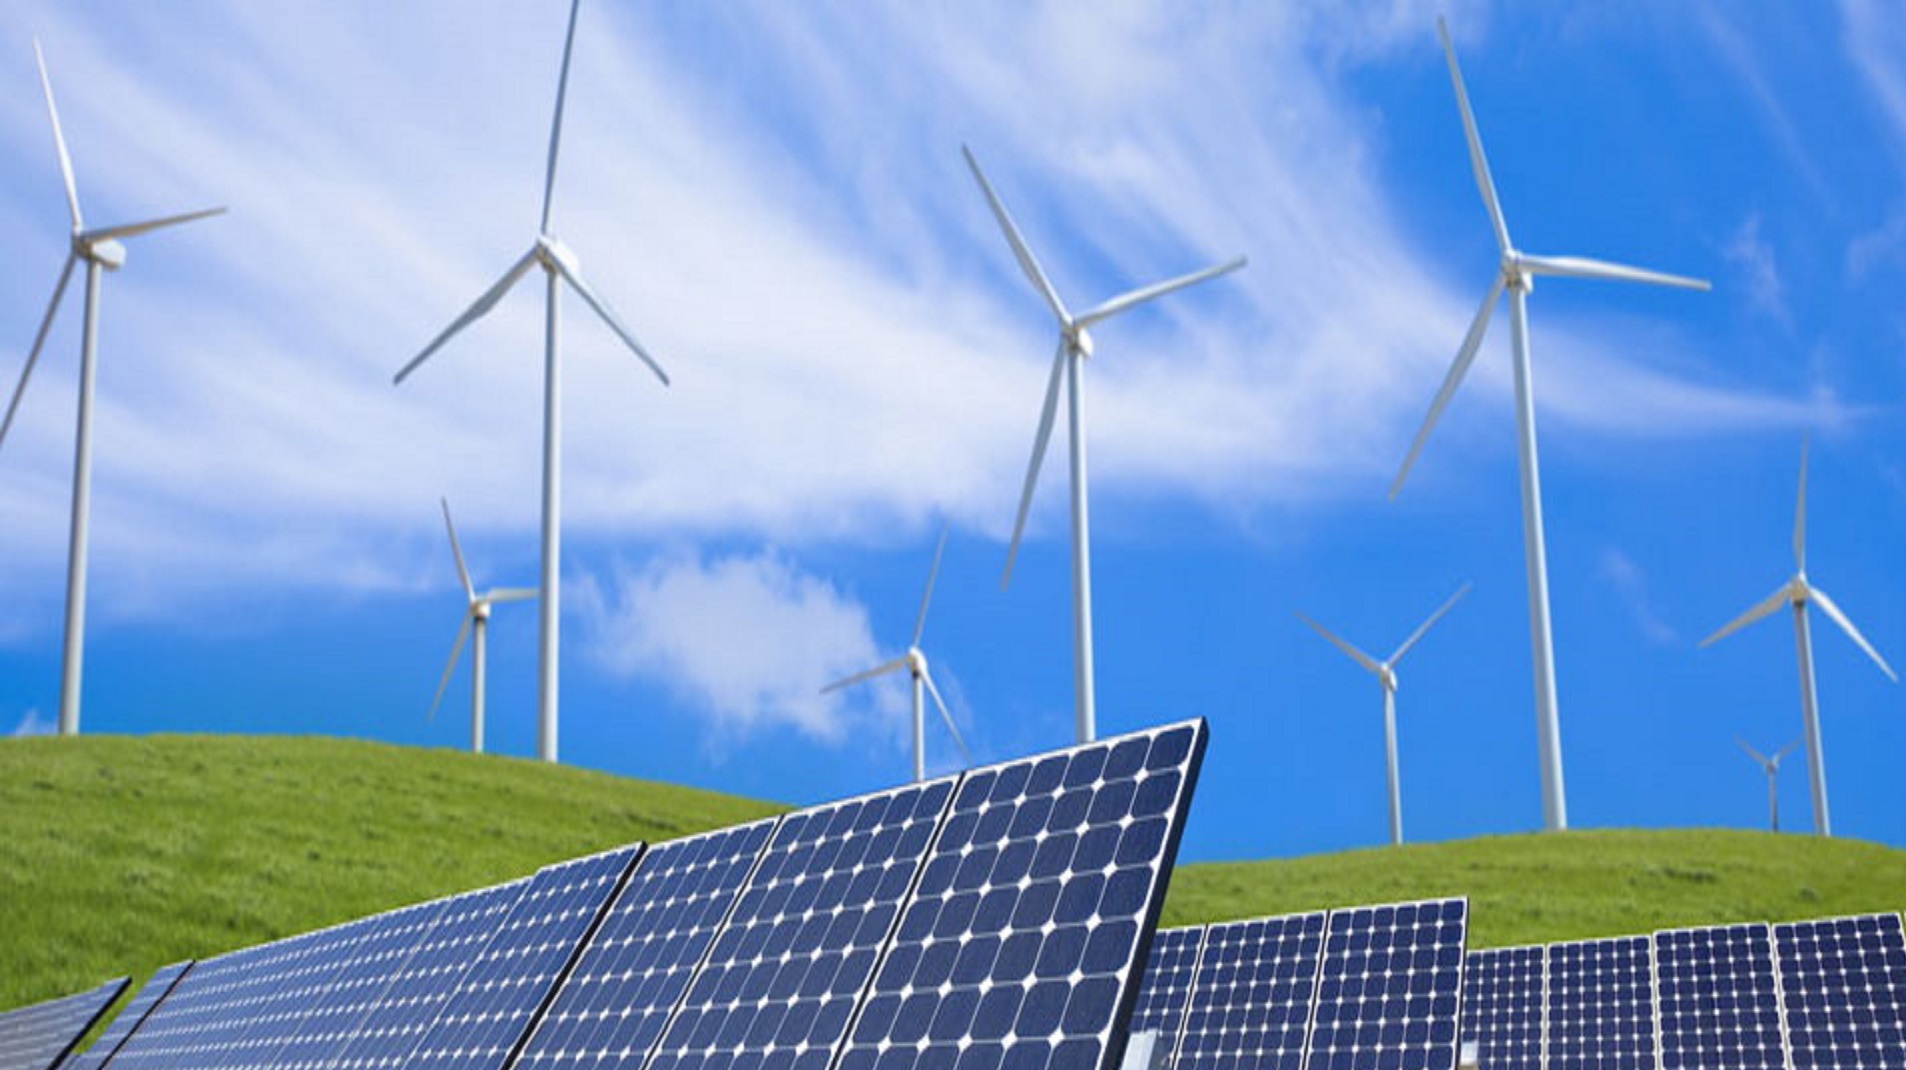 Атомные электростанции использующие альтернативные источники энергии. Ветряные и солнечные электростанции. Ветряки и солнечные панели. Альтернативная Энергетика. Возобновляемые источники энергии.